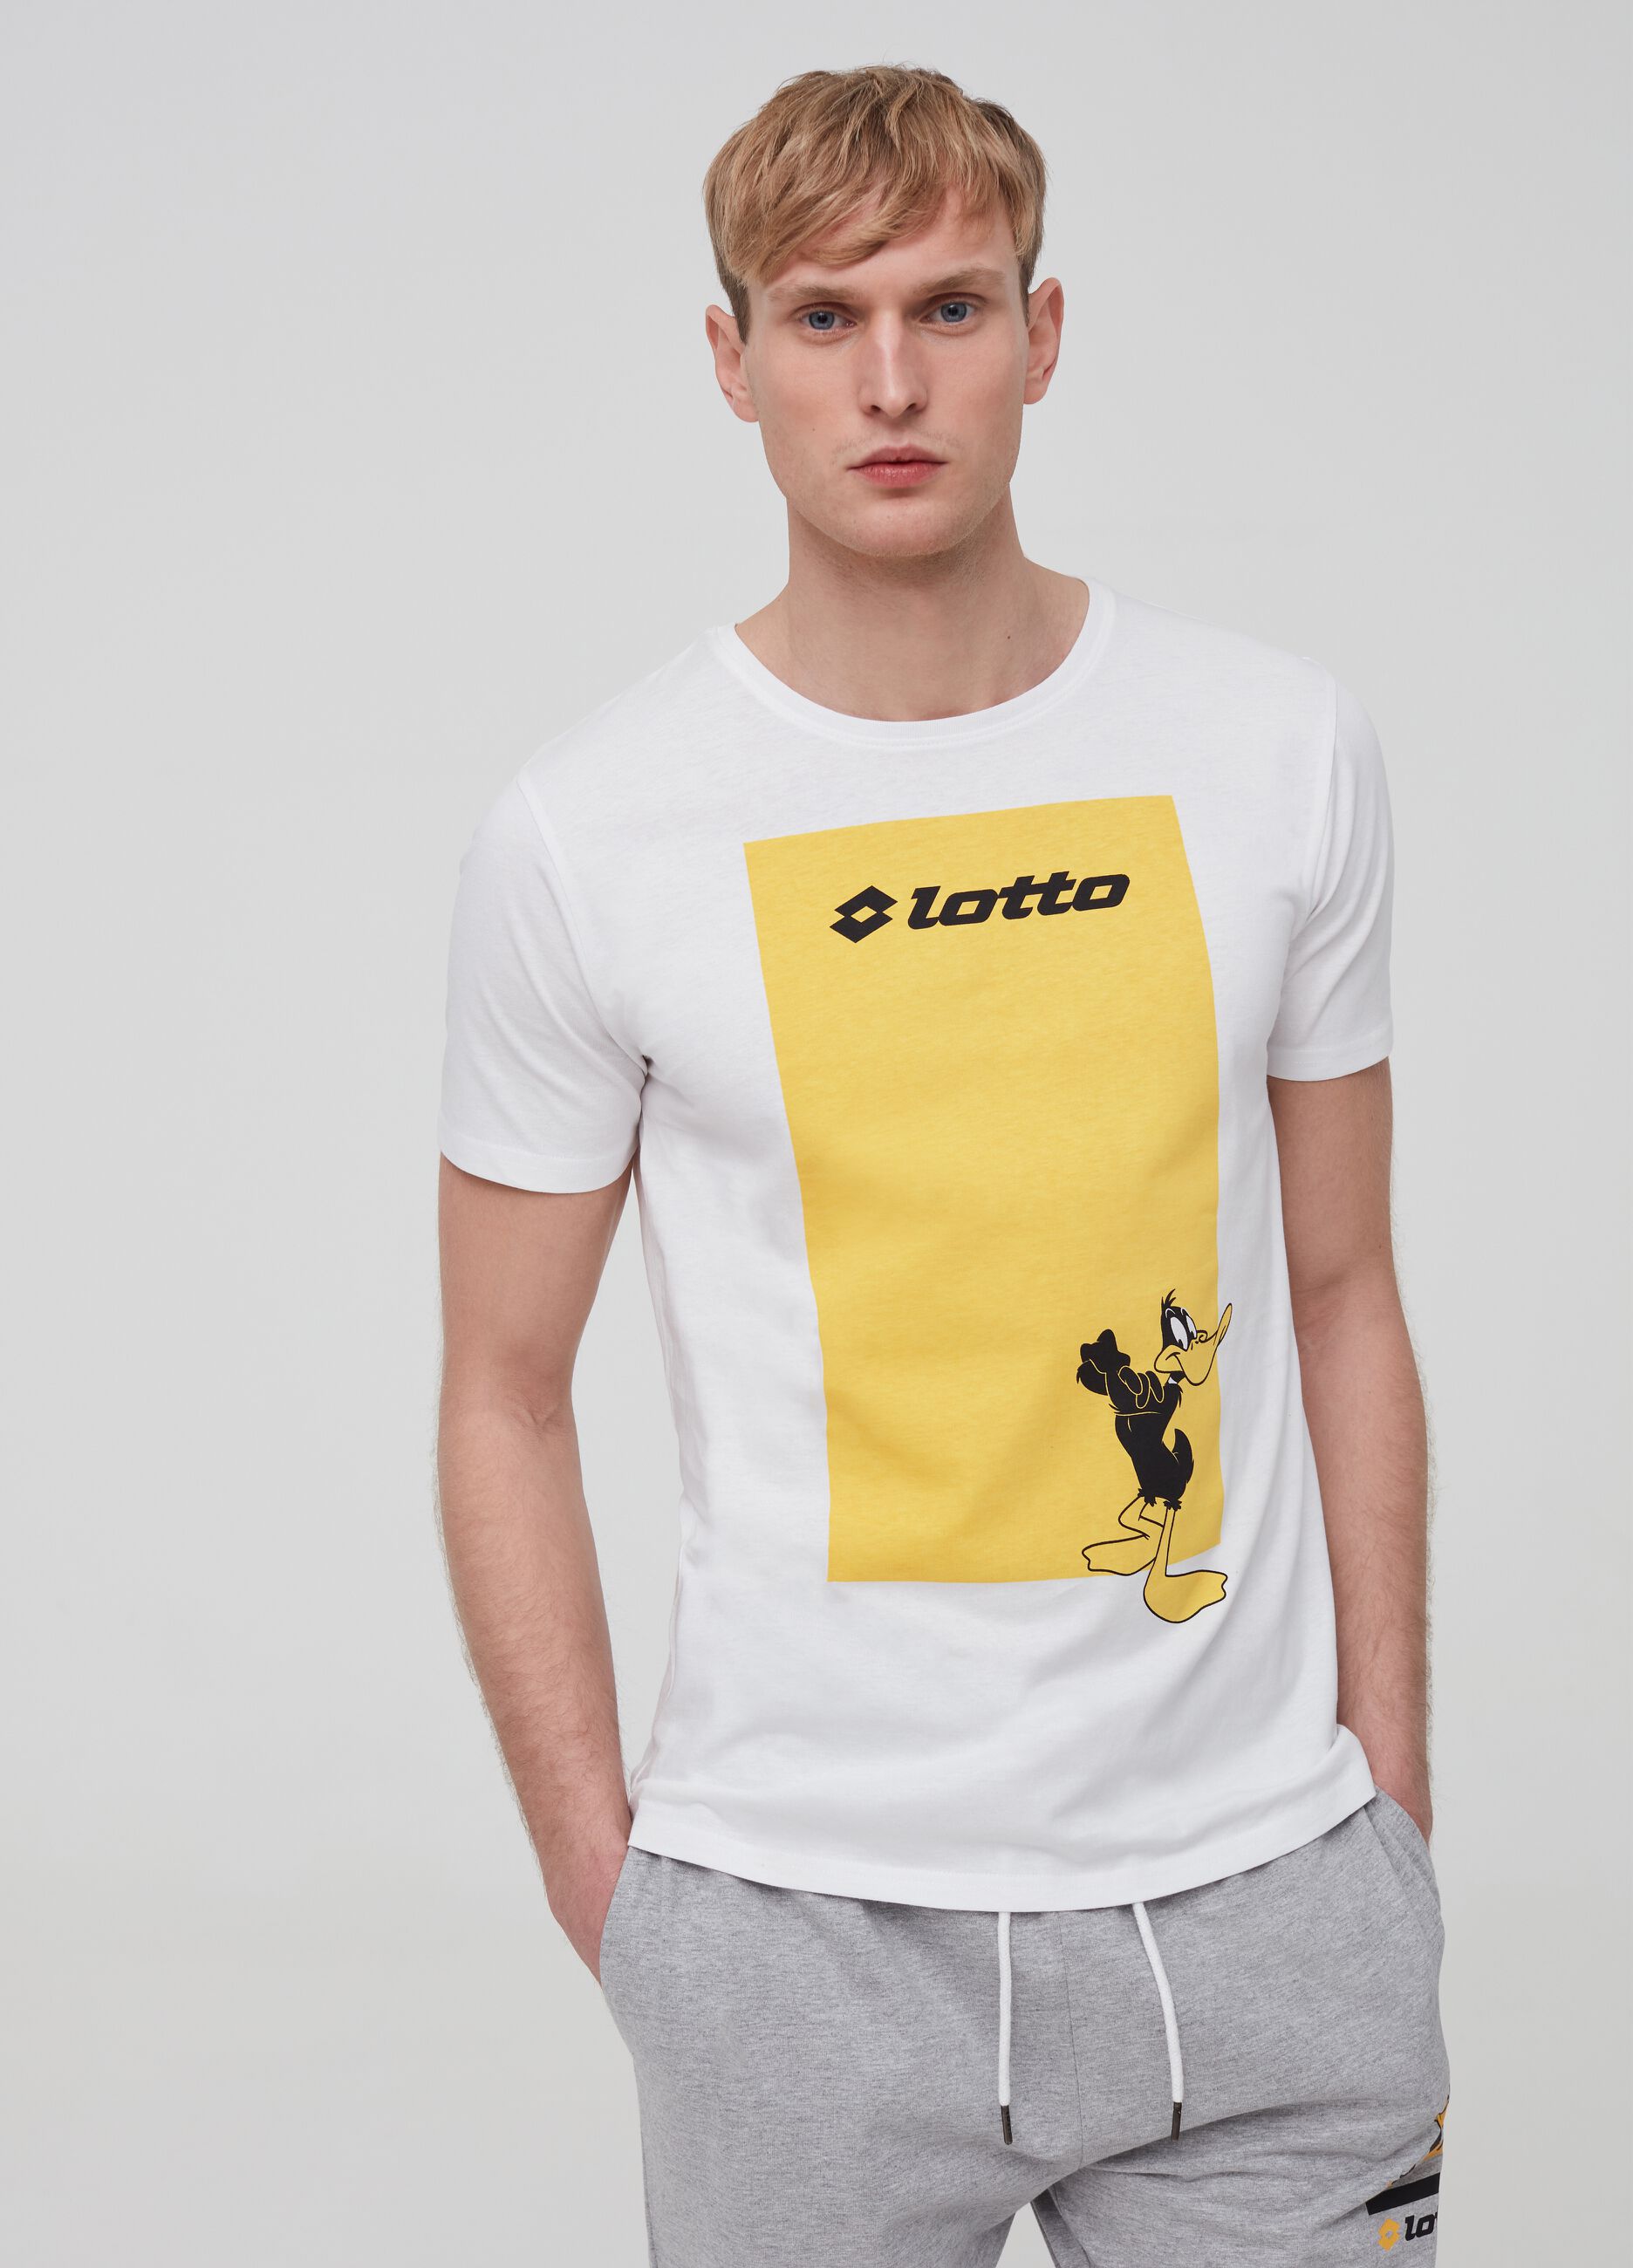 T-shirt in puro cotone stampa Lotto